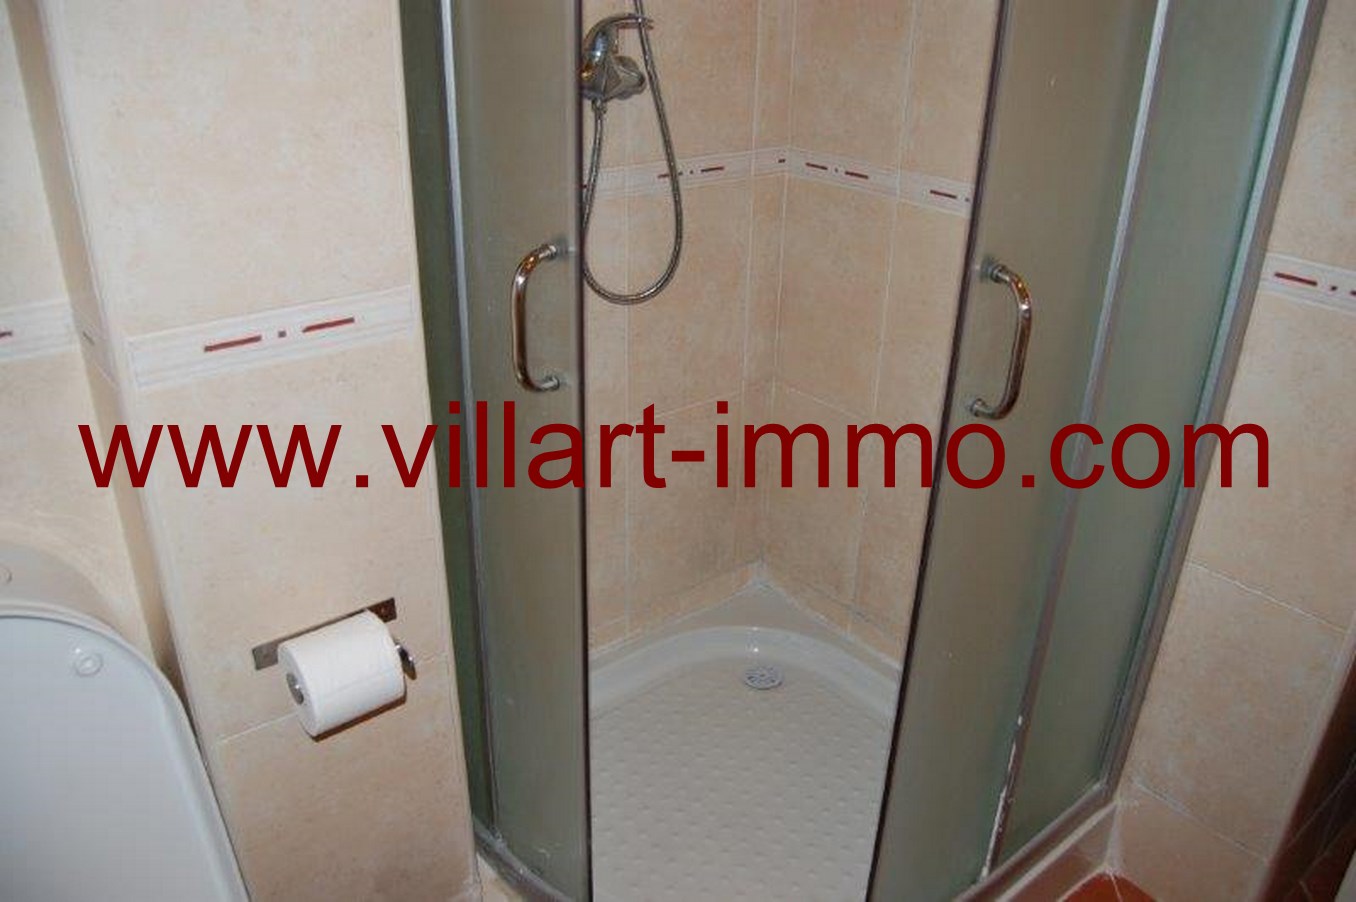 10-Location-Appartement- meublé-Tanger-salle de bain -L634-Villart-immo